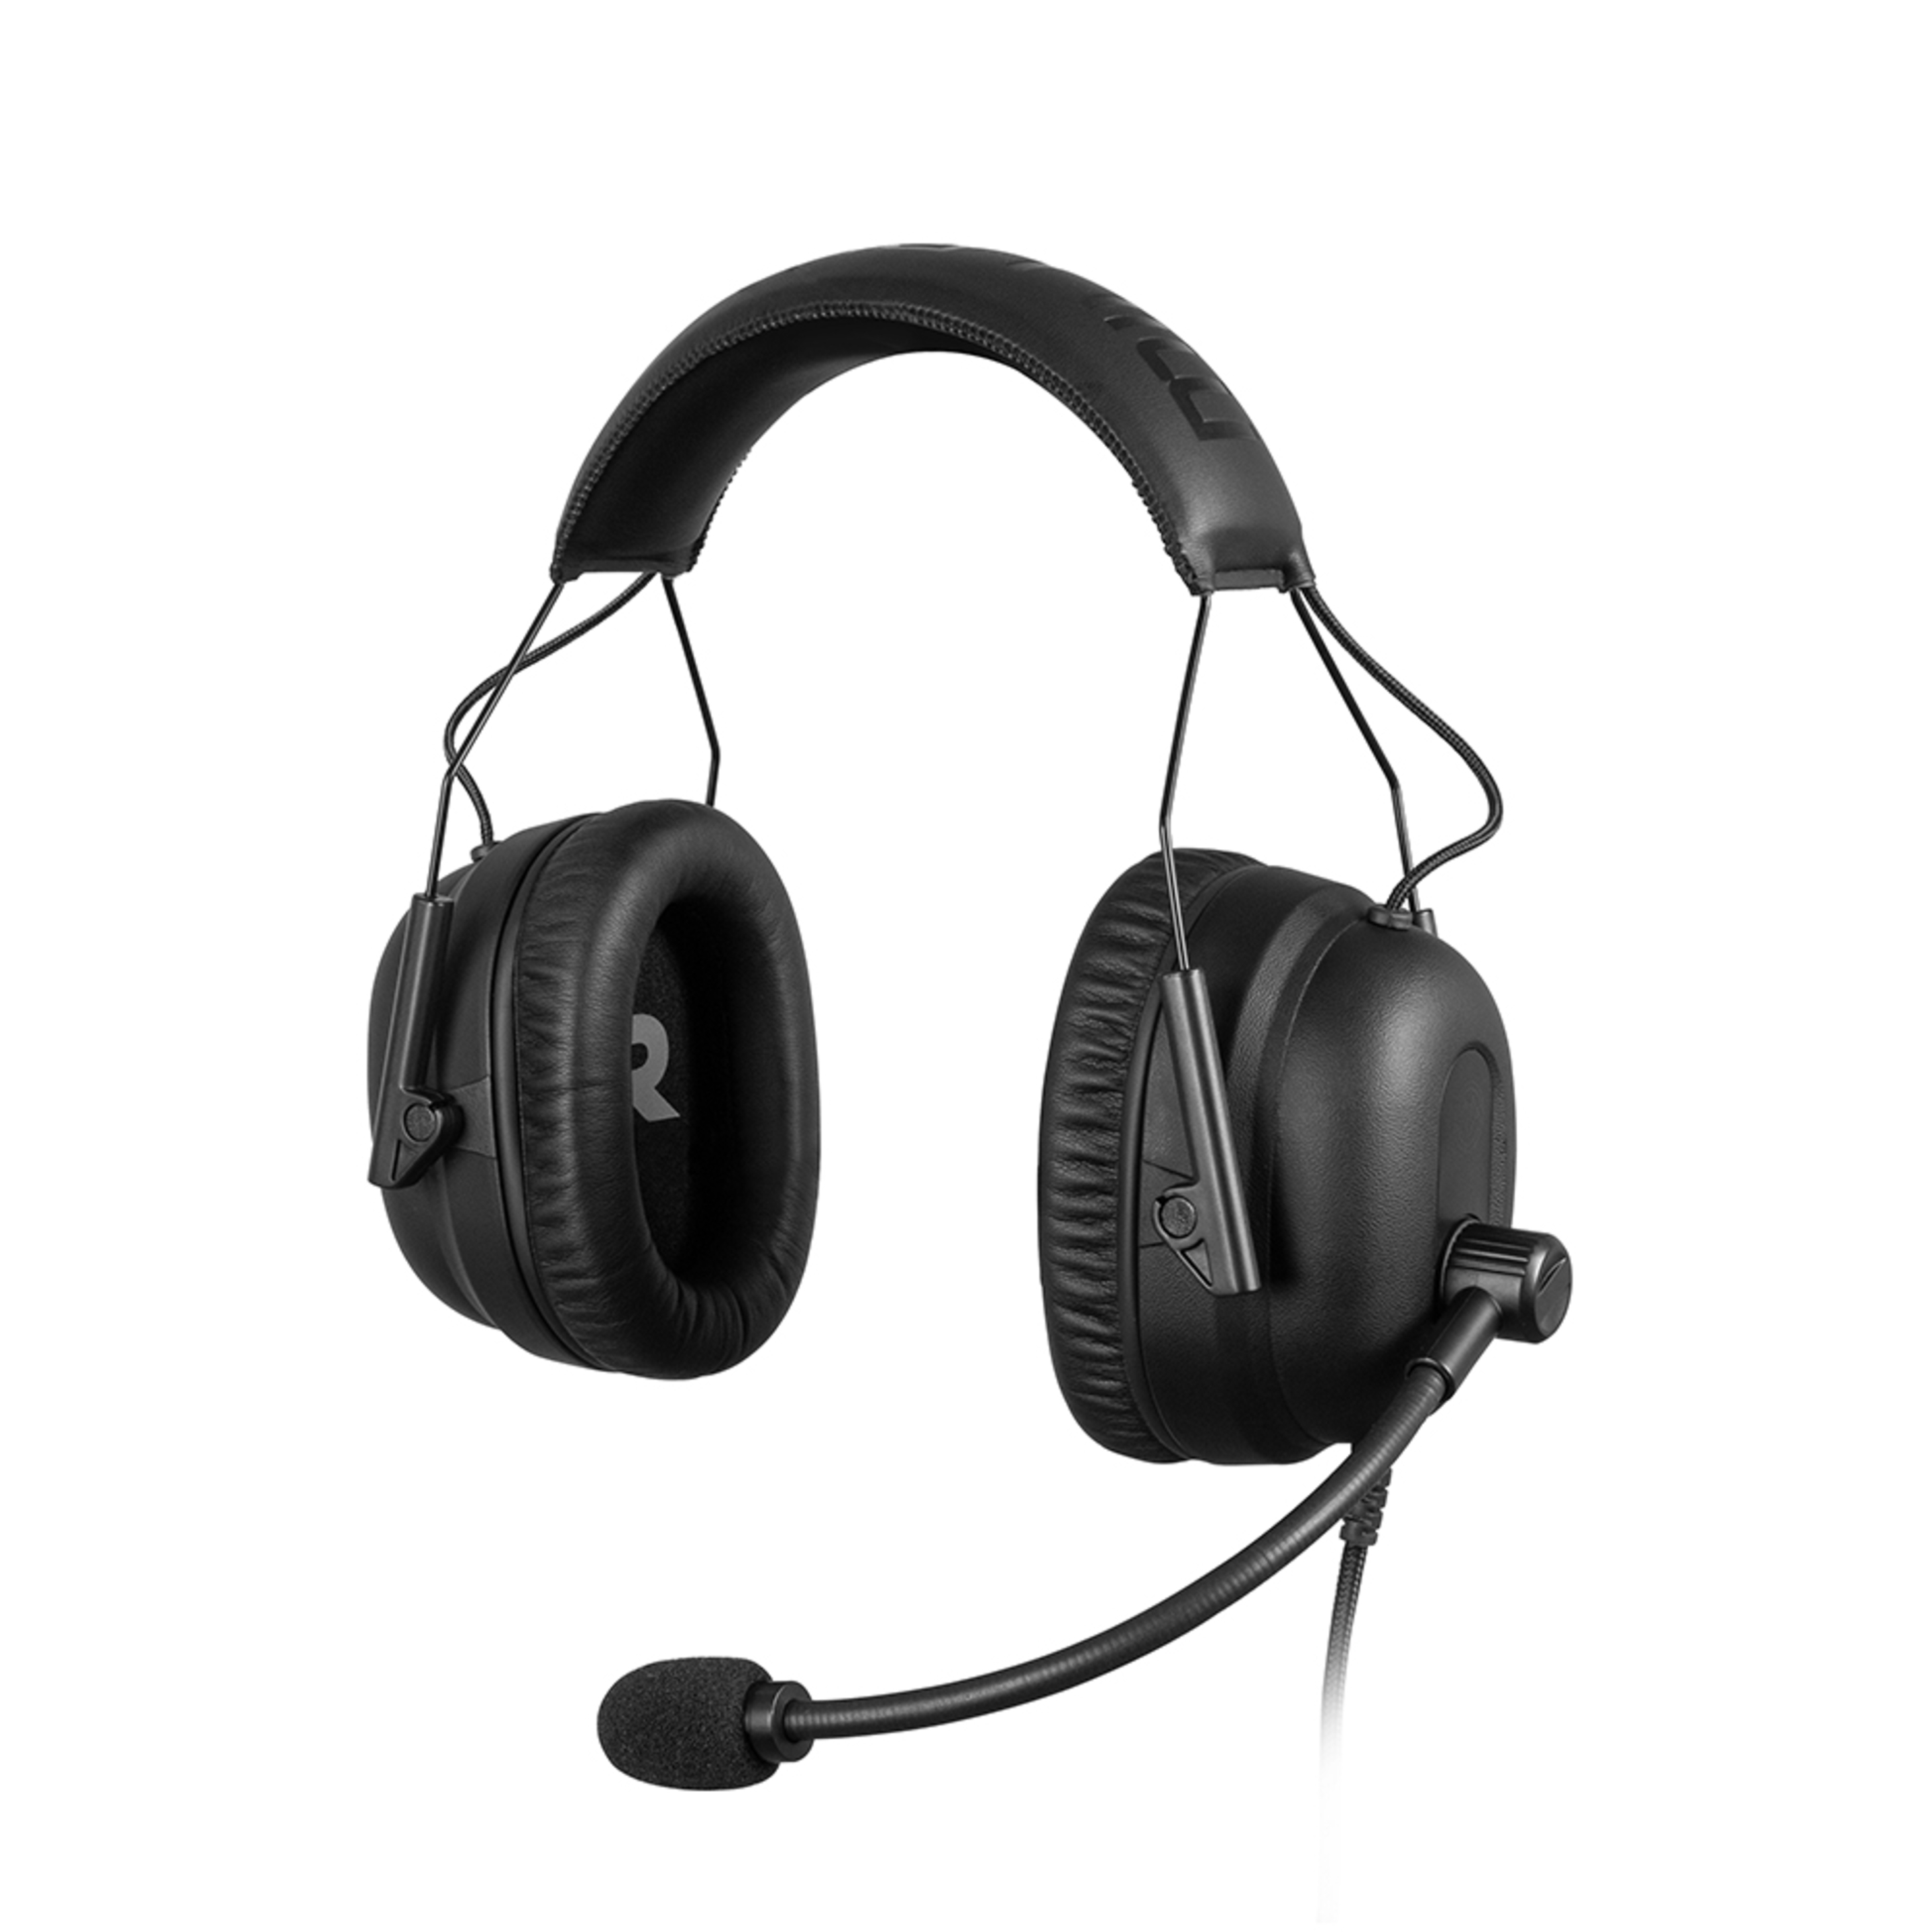 Millenium Headset 3, Auriculares Gaming Con Sorround 7.1 - negro - 